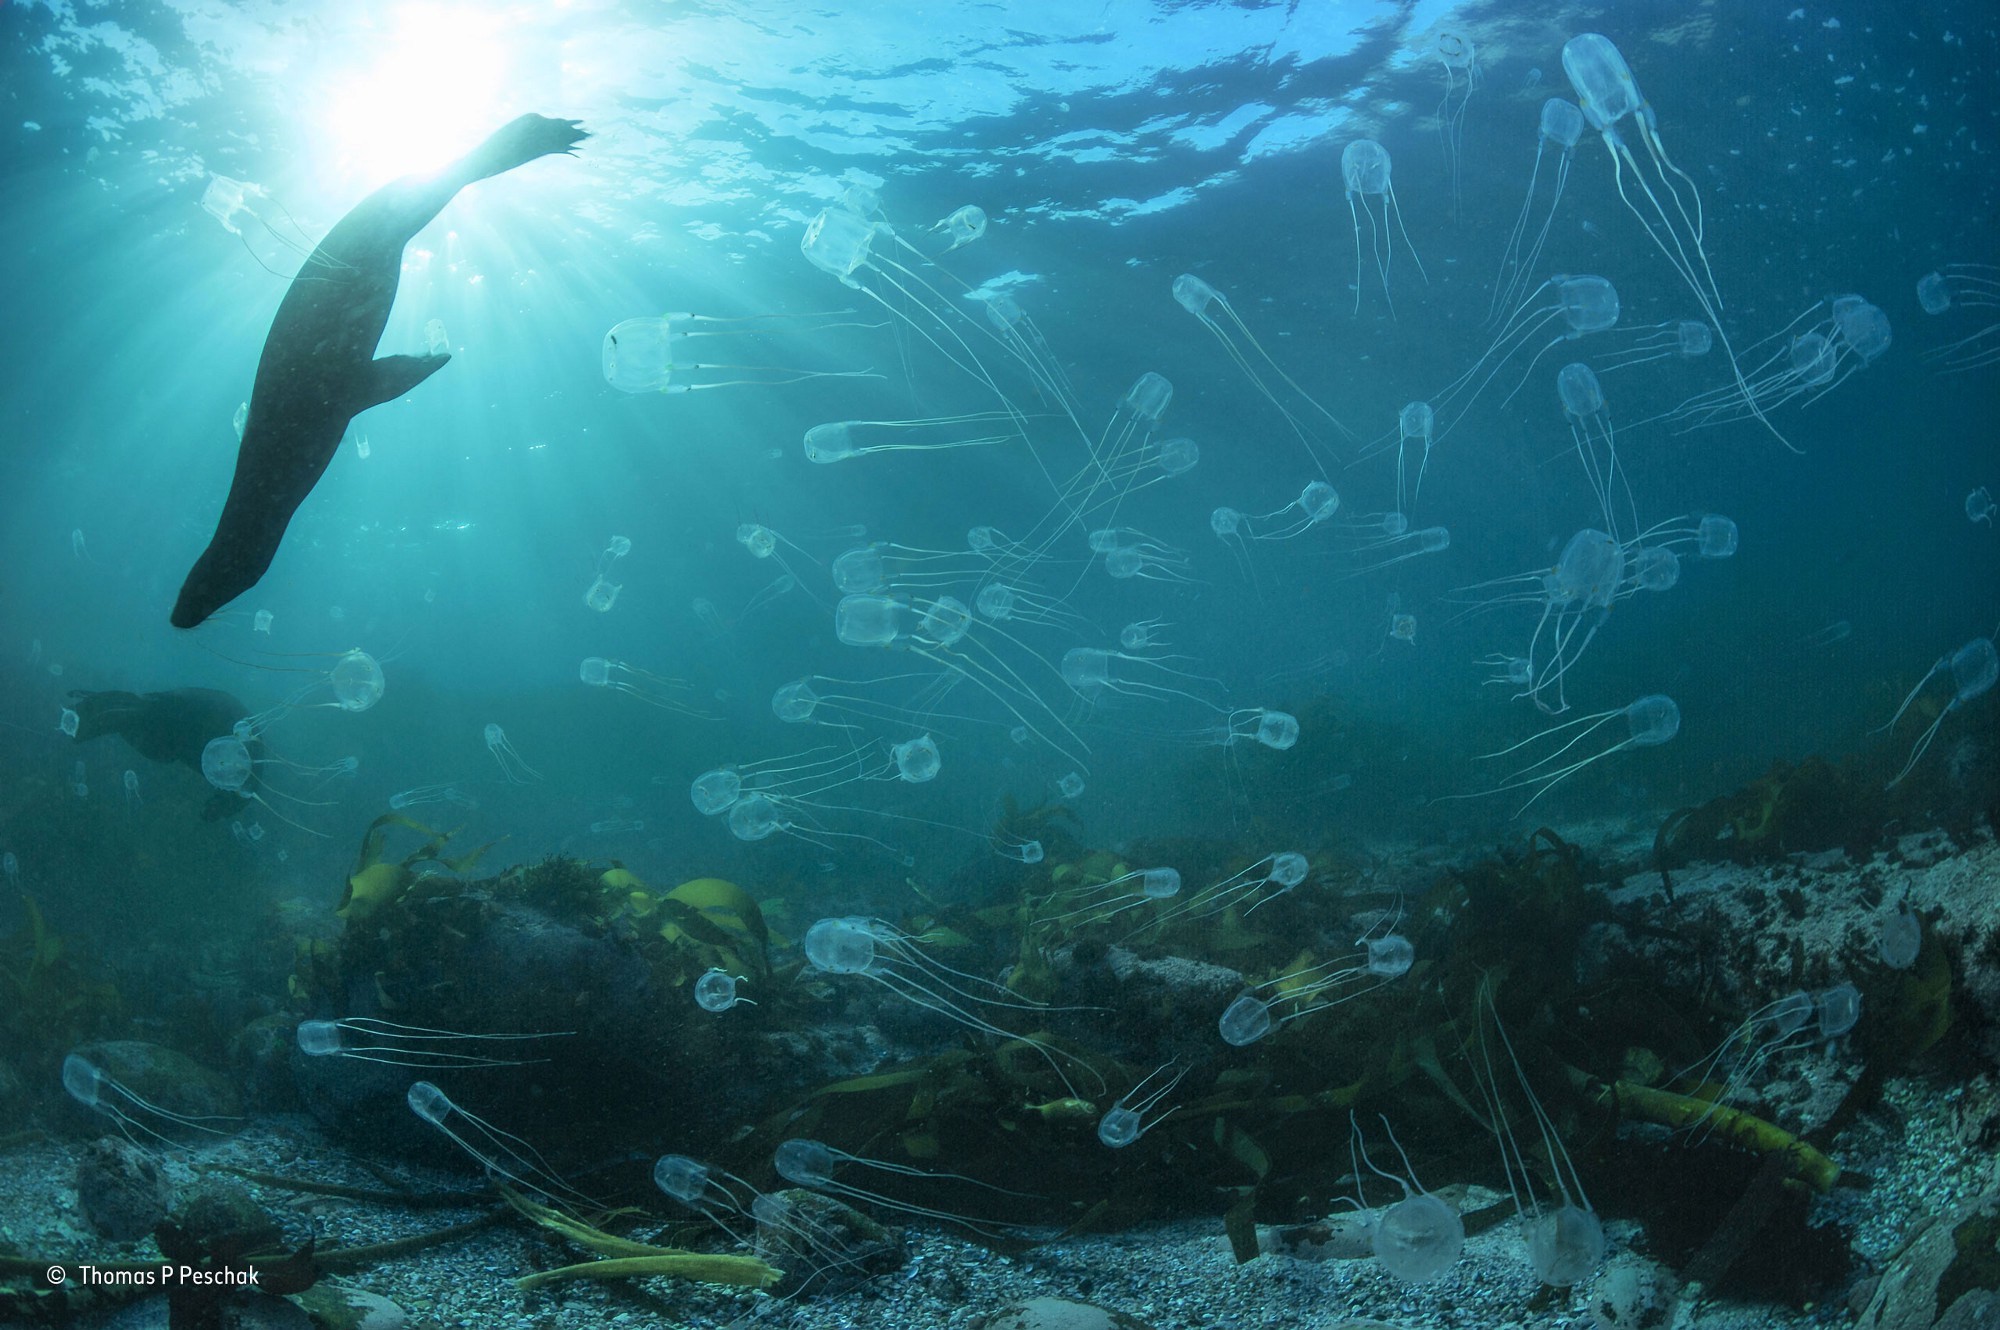 General 2000x1330 nature water underwater sea animals winner photography contests Sun sunlight jellyfish seals swimming sun rays algae